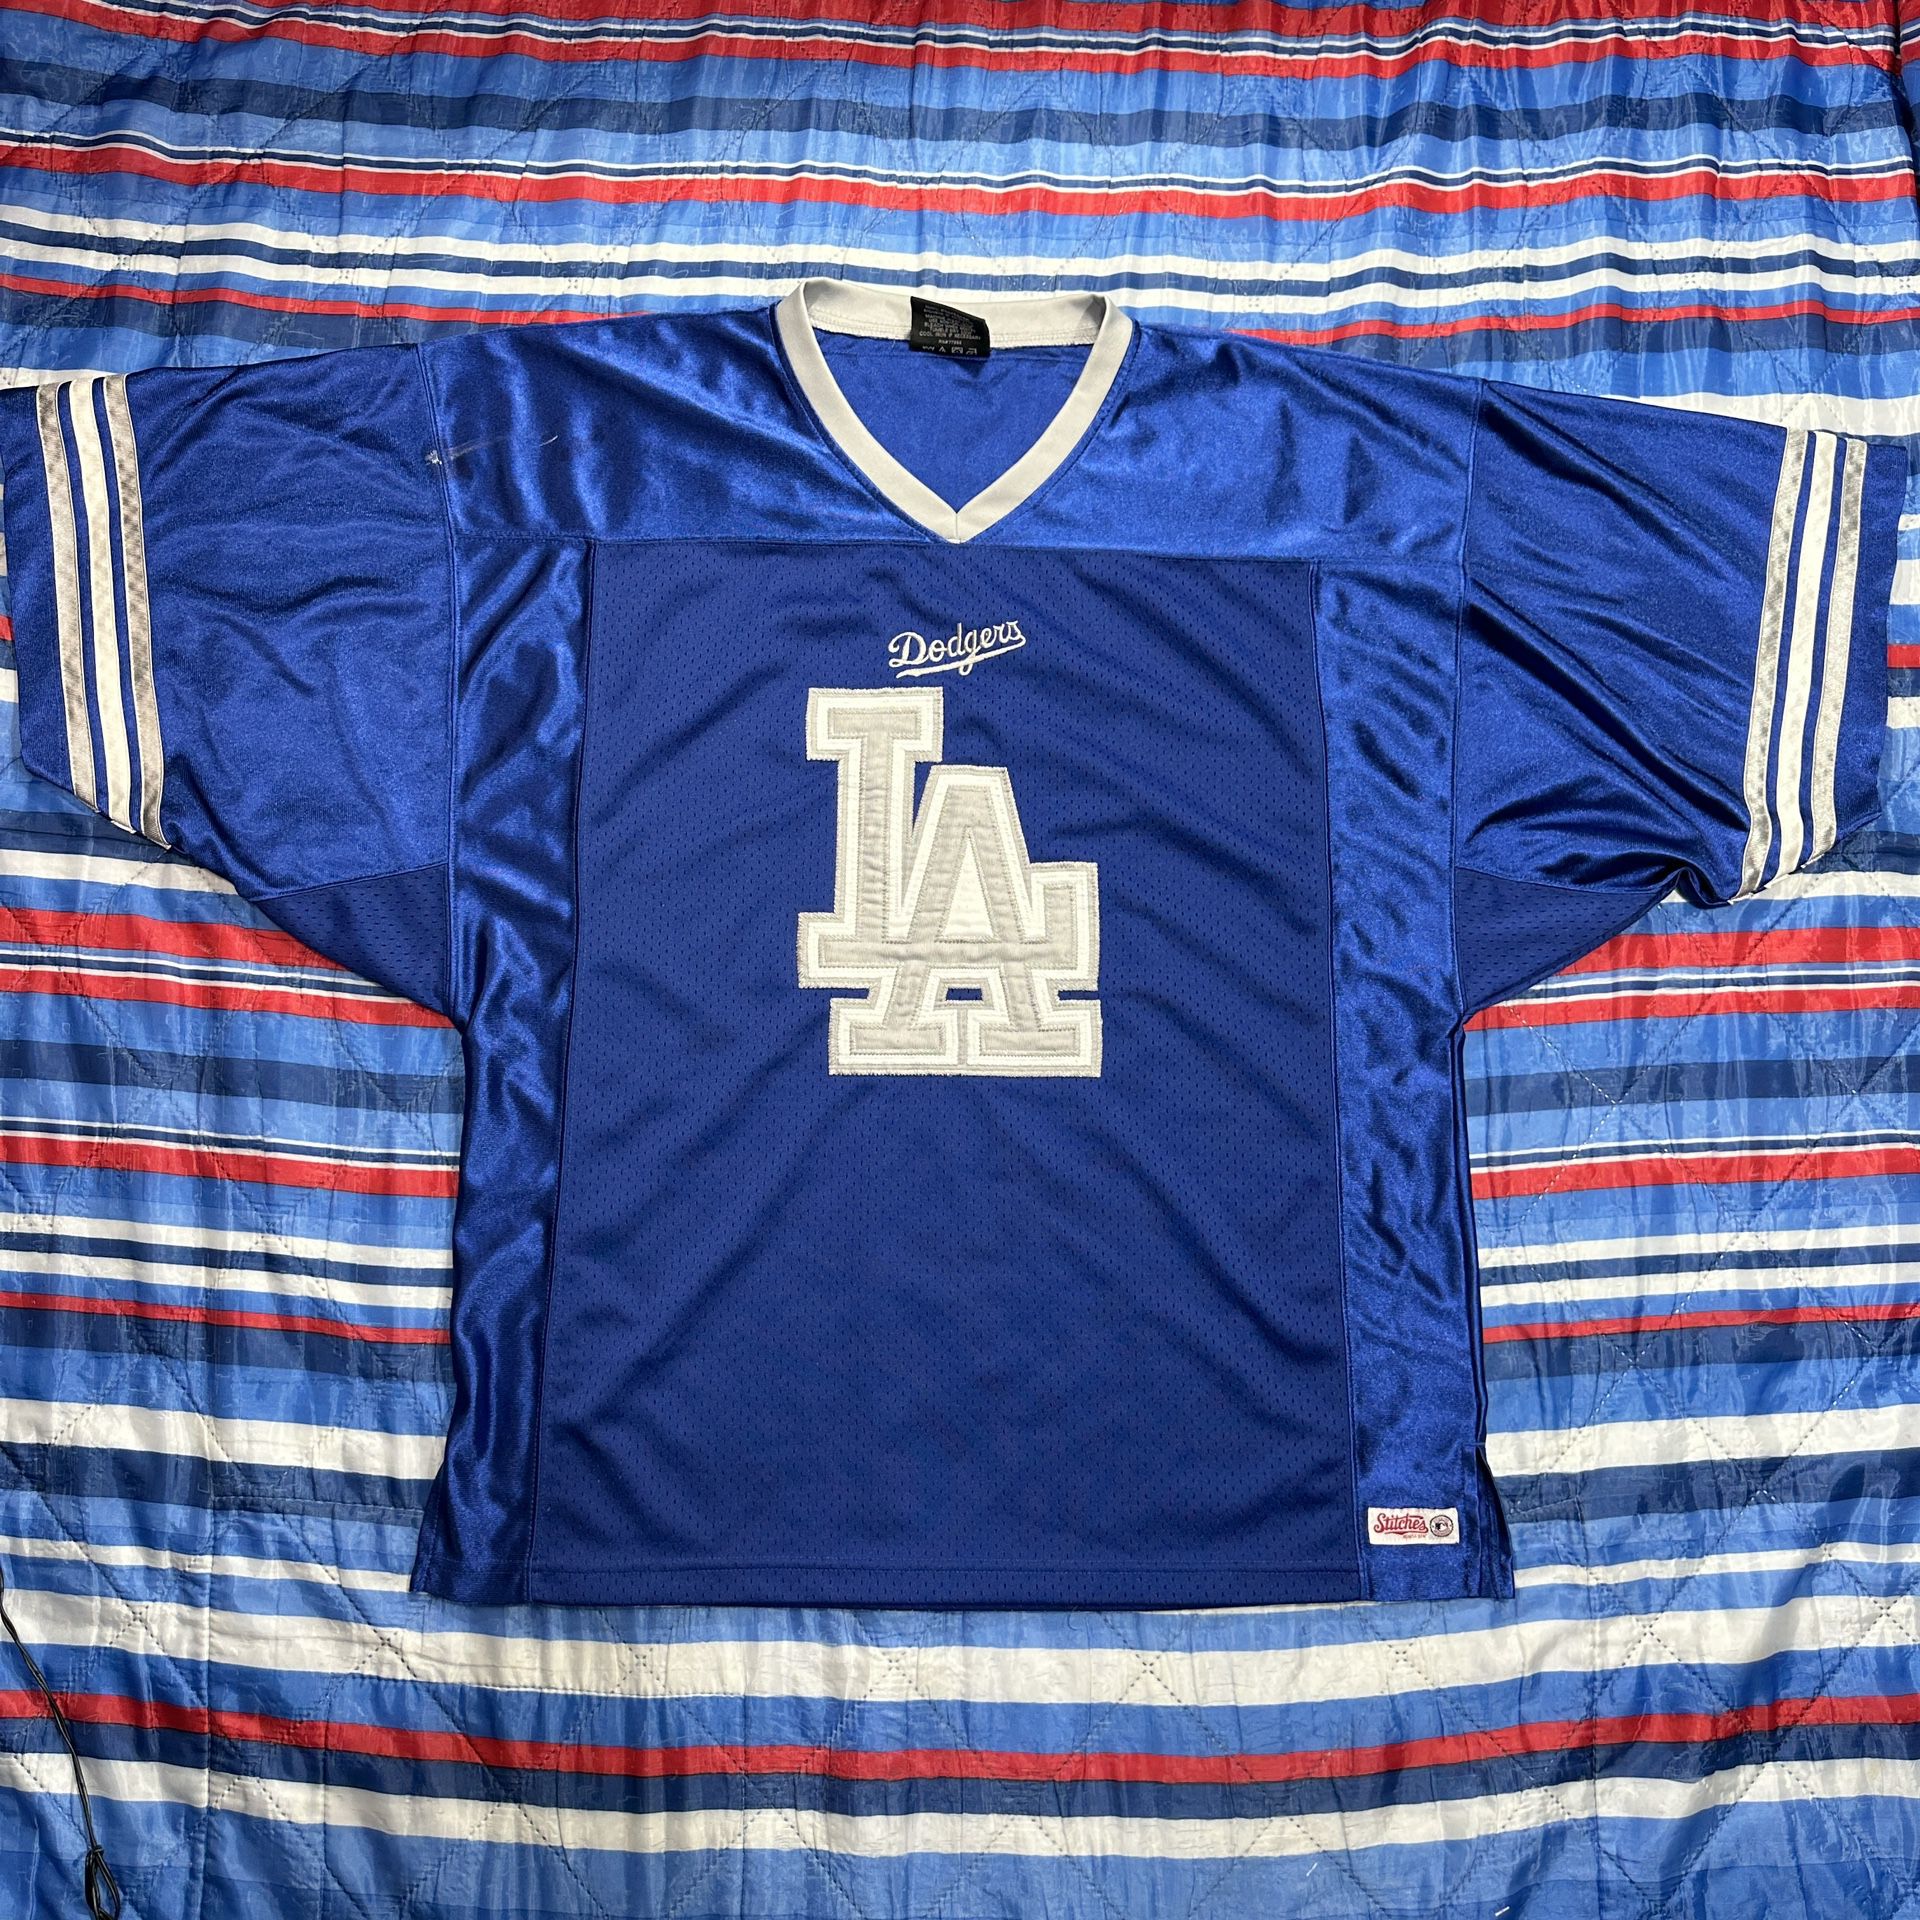 LA Dodgers Men's Size Large Stitches Blue Football Jersey Los